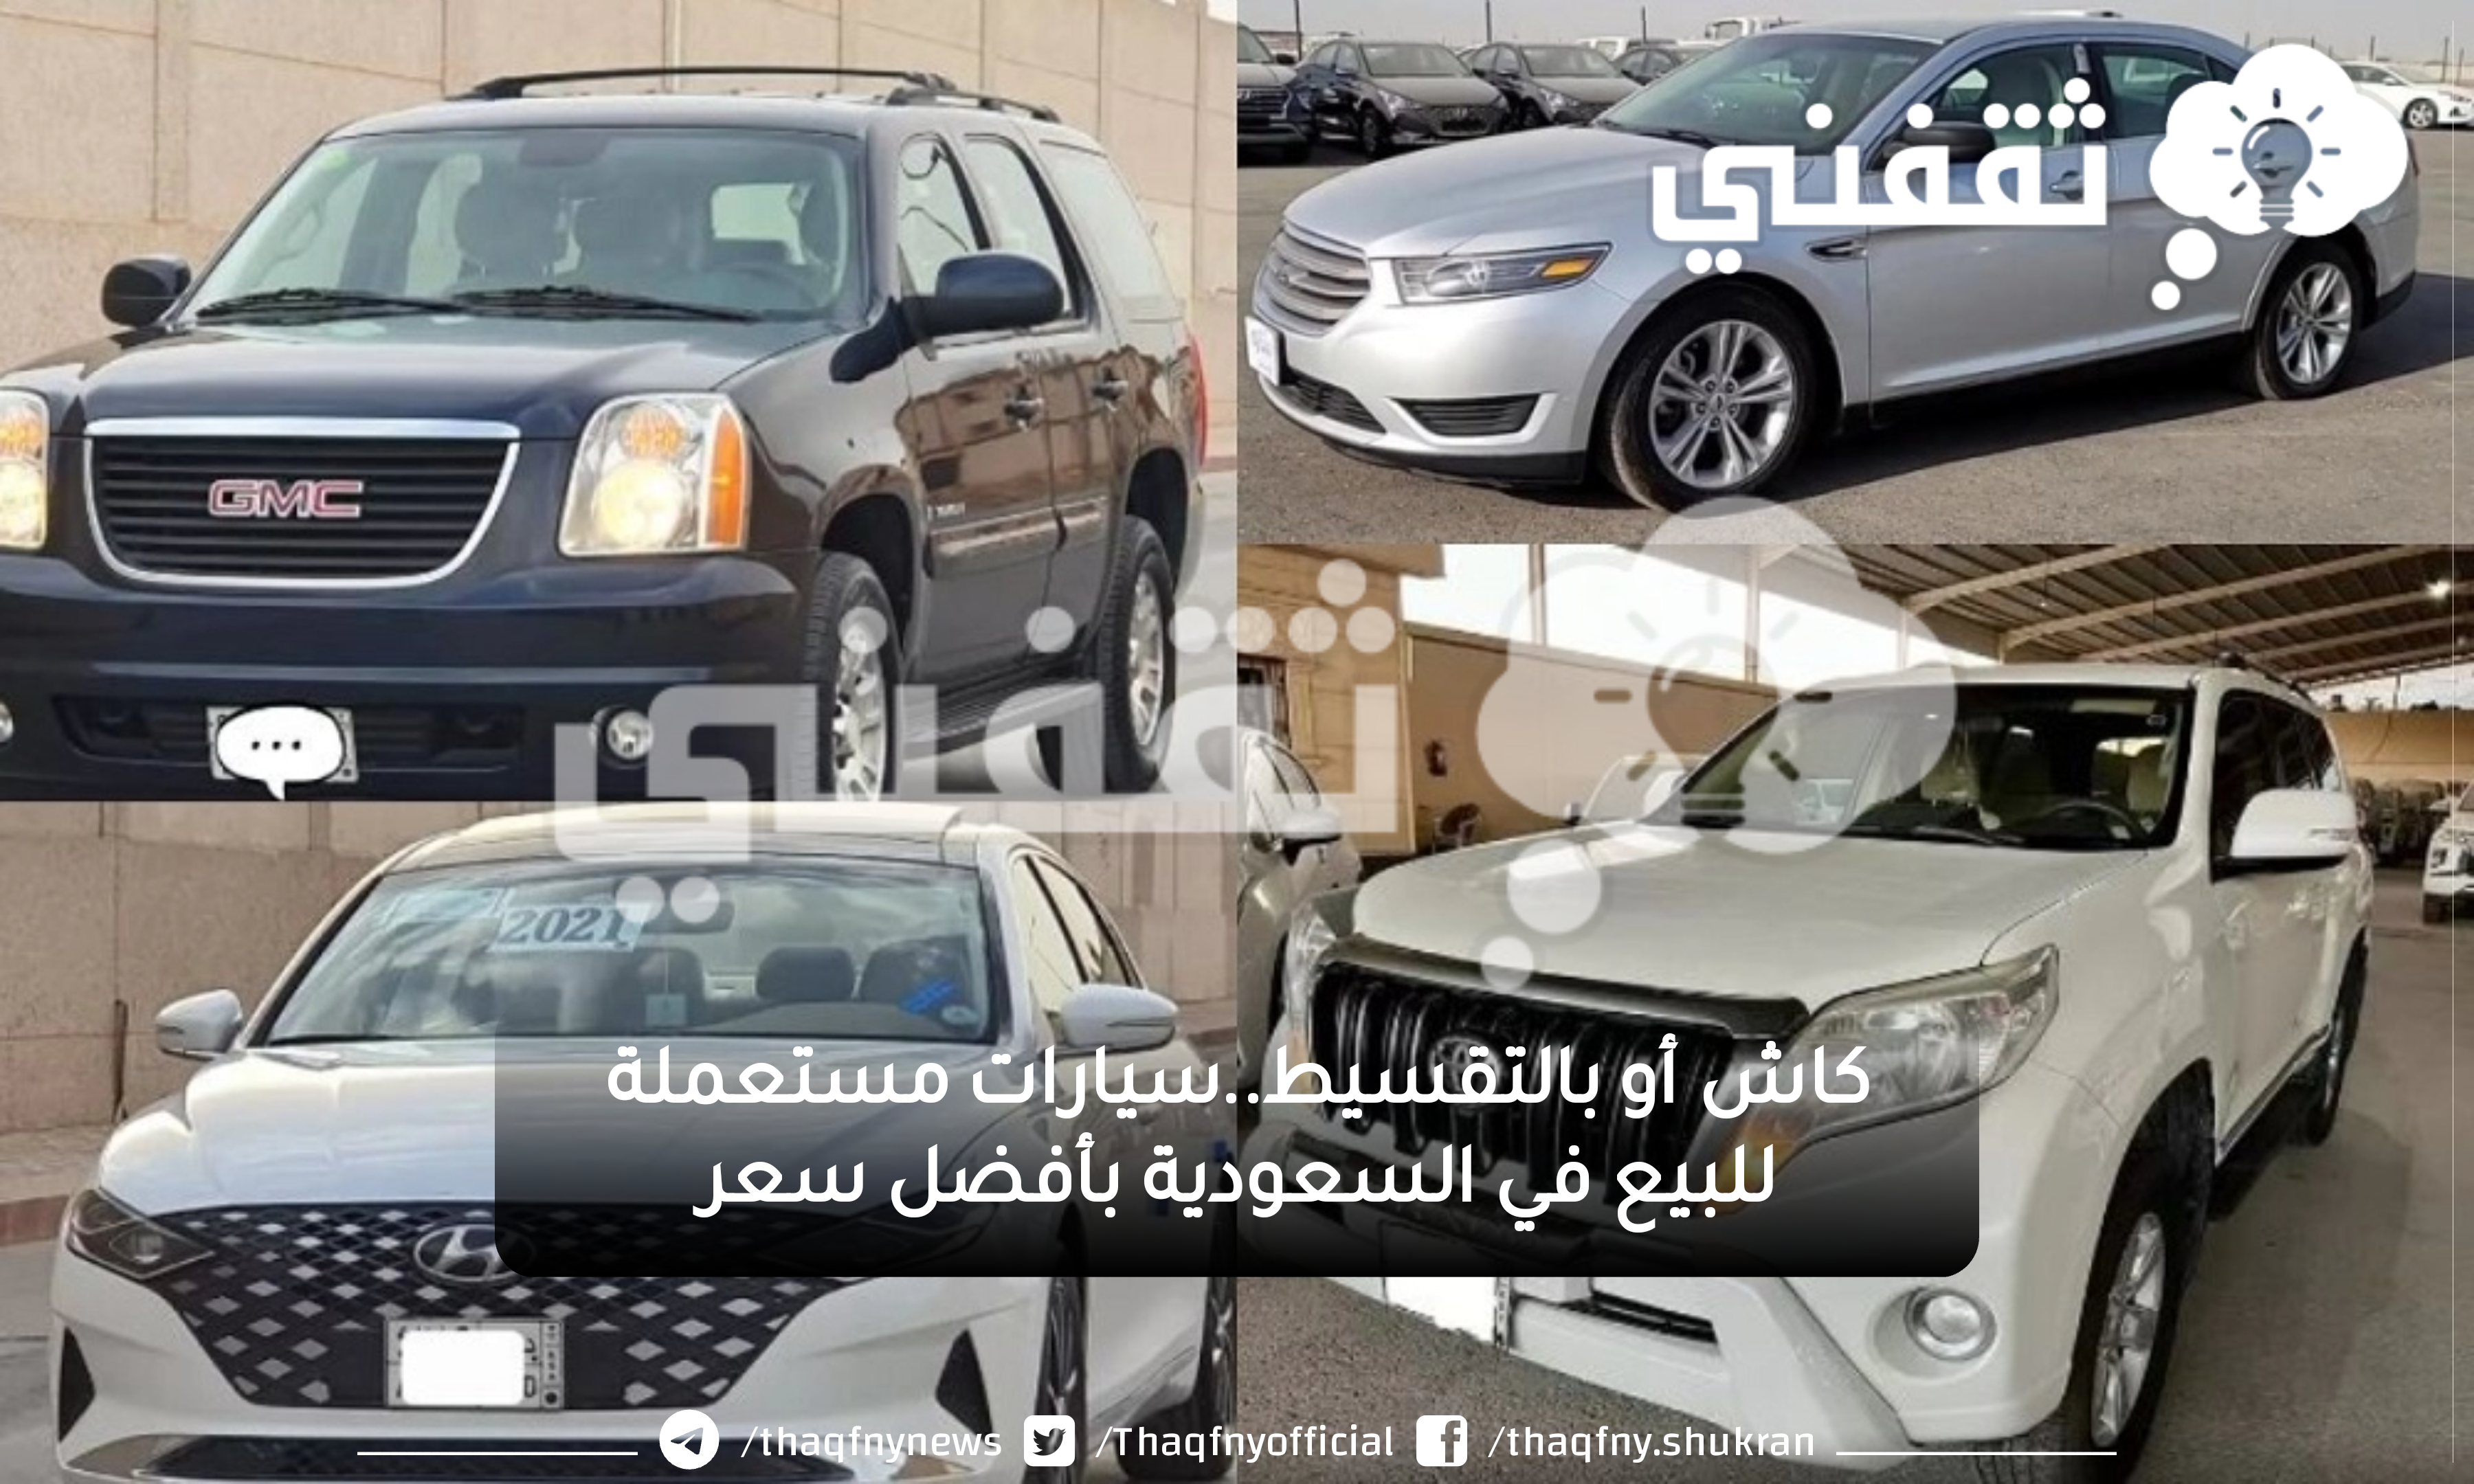 كاش أو بالتقسيط..سيارات مستعملة للبيع في السعودية بأقل الأسعار وبحالة مضمونة